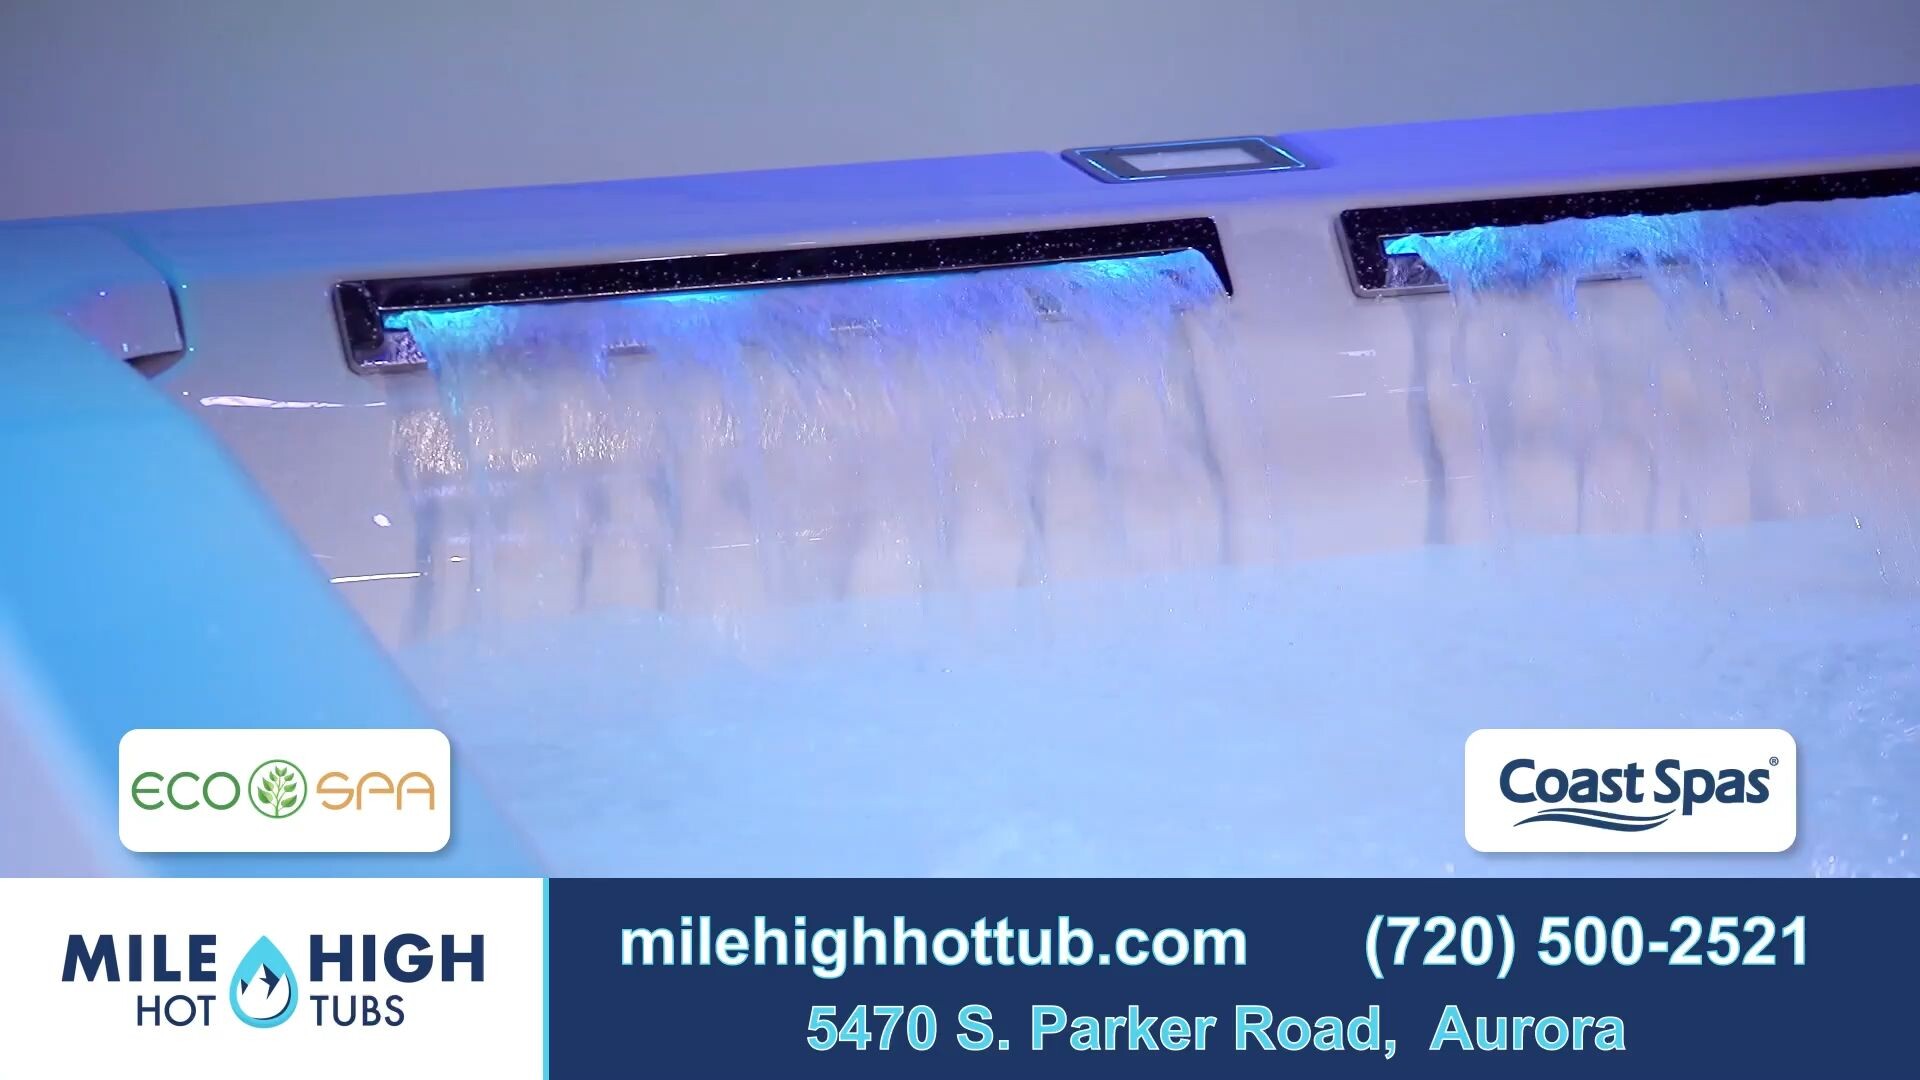 Mile High Hot Tubs: Innovative Spas